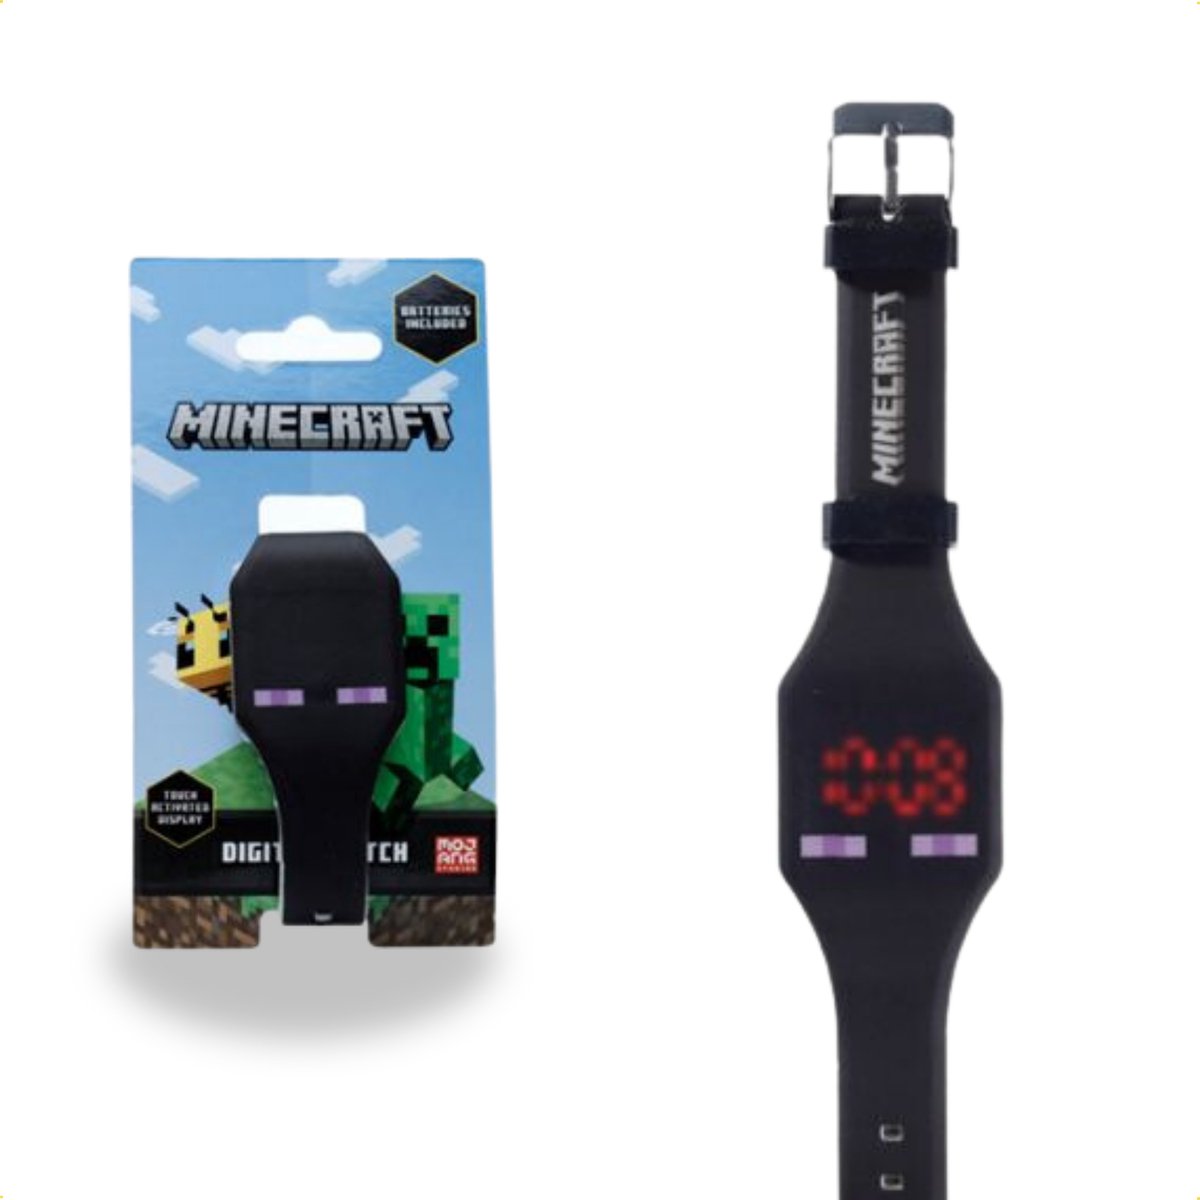 Minecraft Horloge - Met Silliconen band - Kinderhorloge - Digitale tijd - Datum en Tijd - Zwart - Enderman